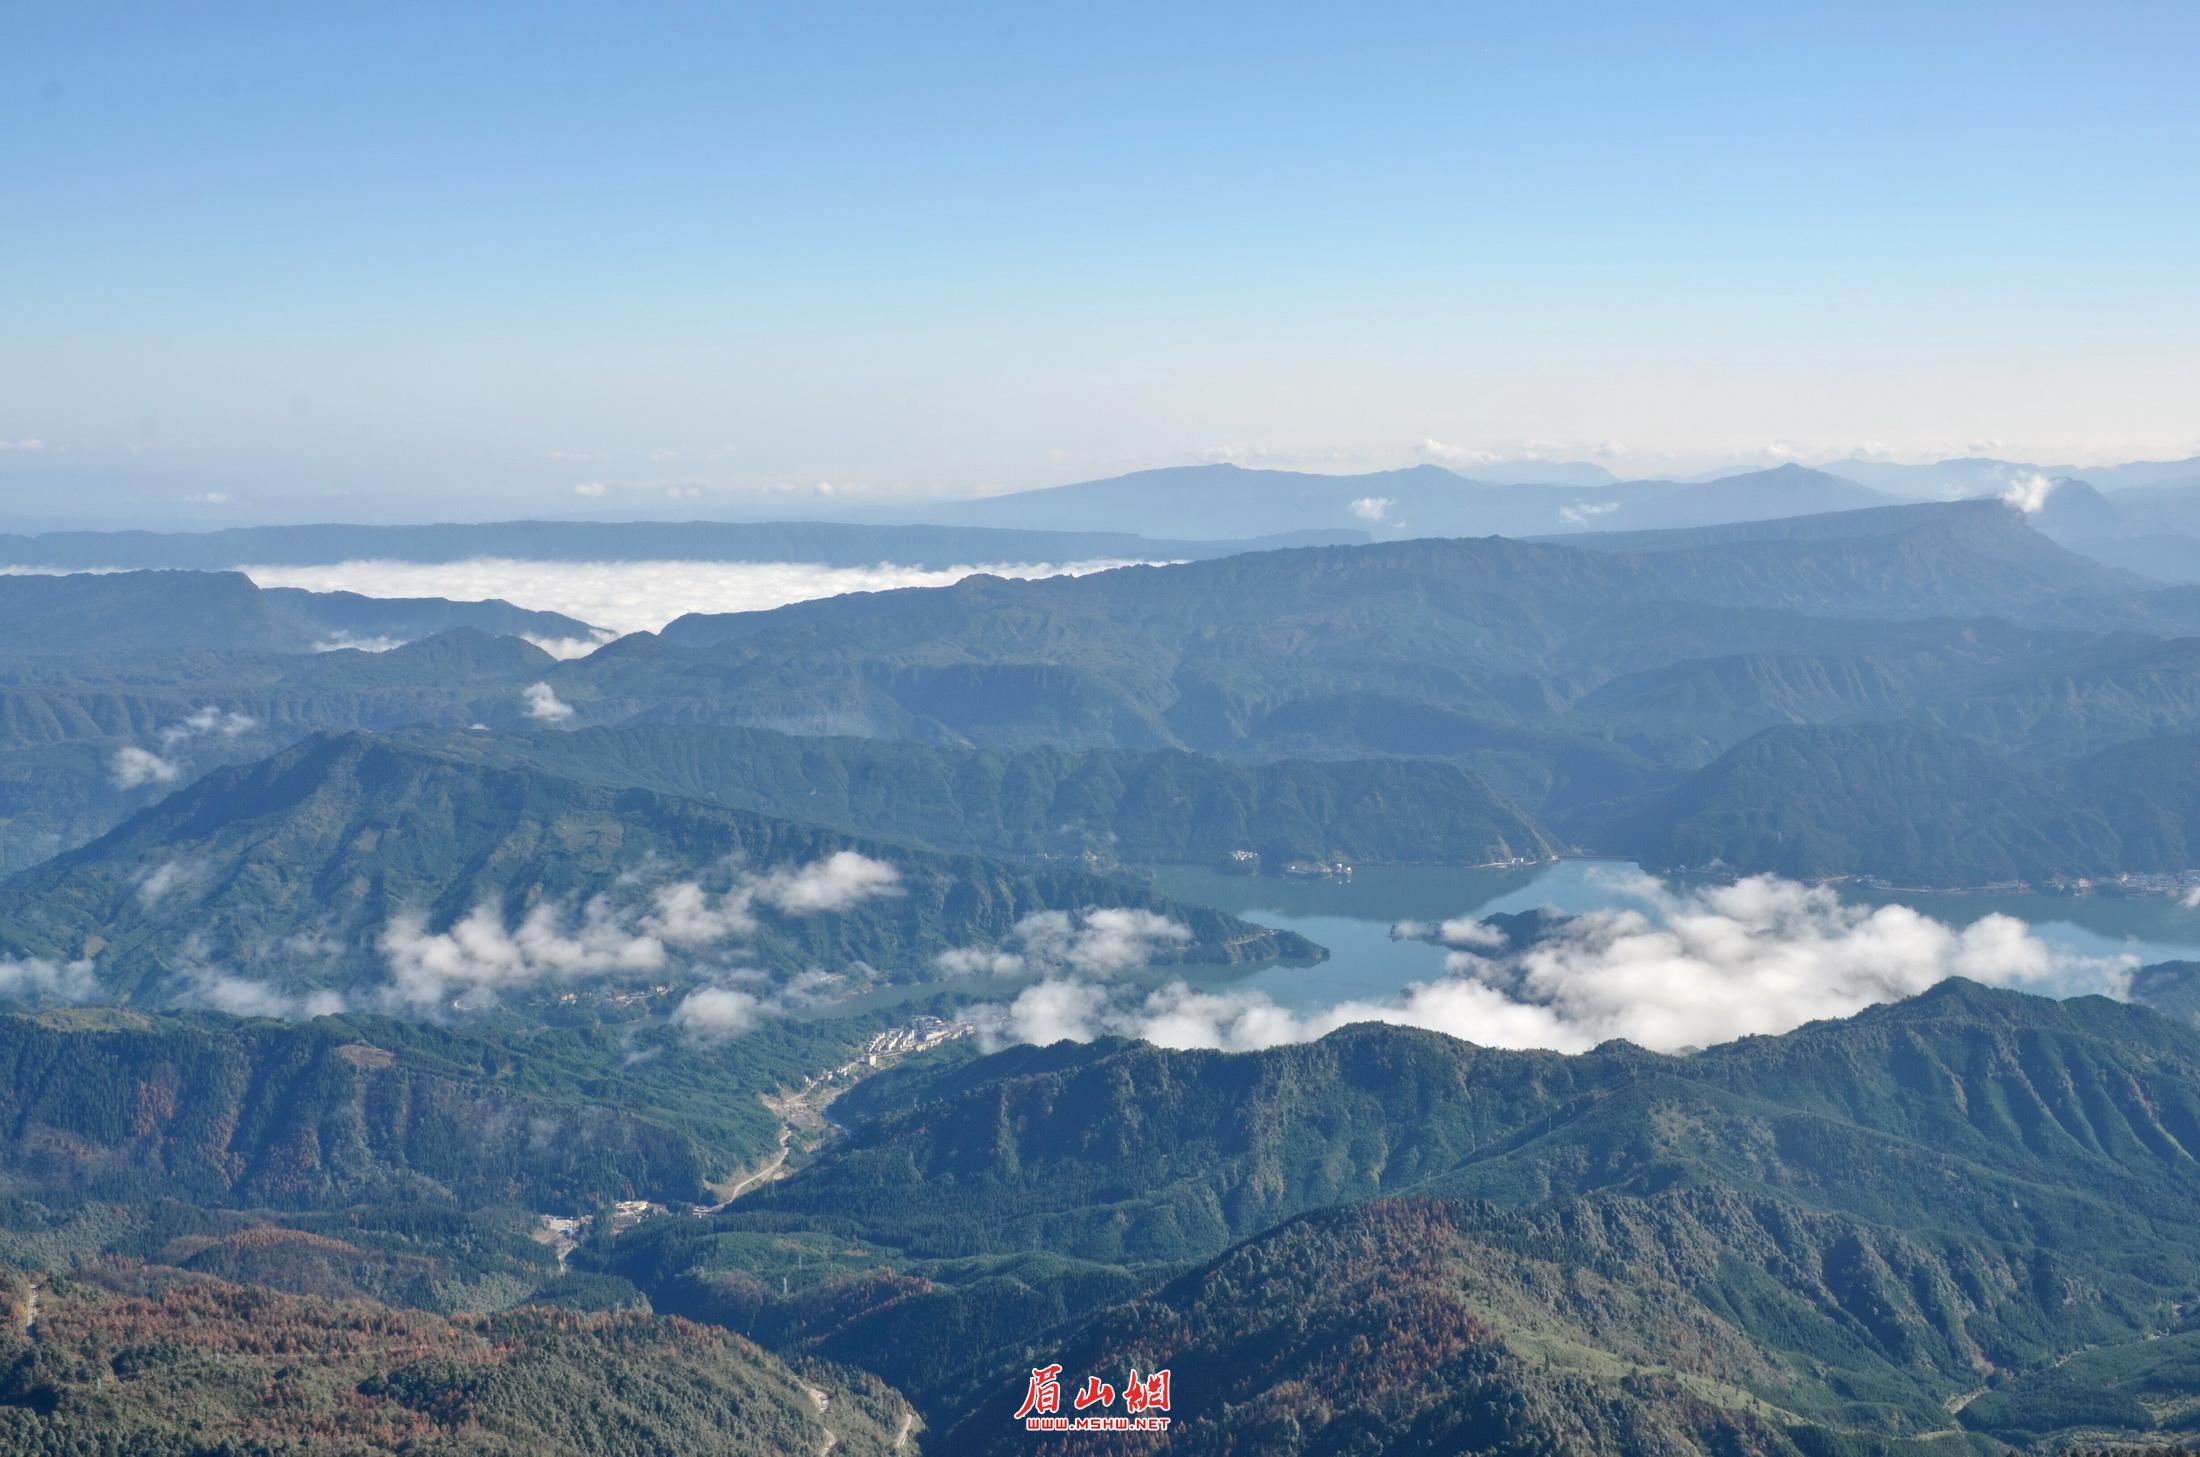 从瓦屋山顶拍摄山下雅女湖及周边景色。.jpg